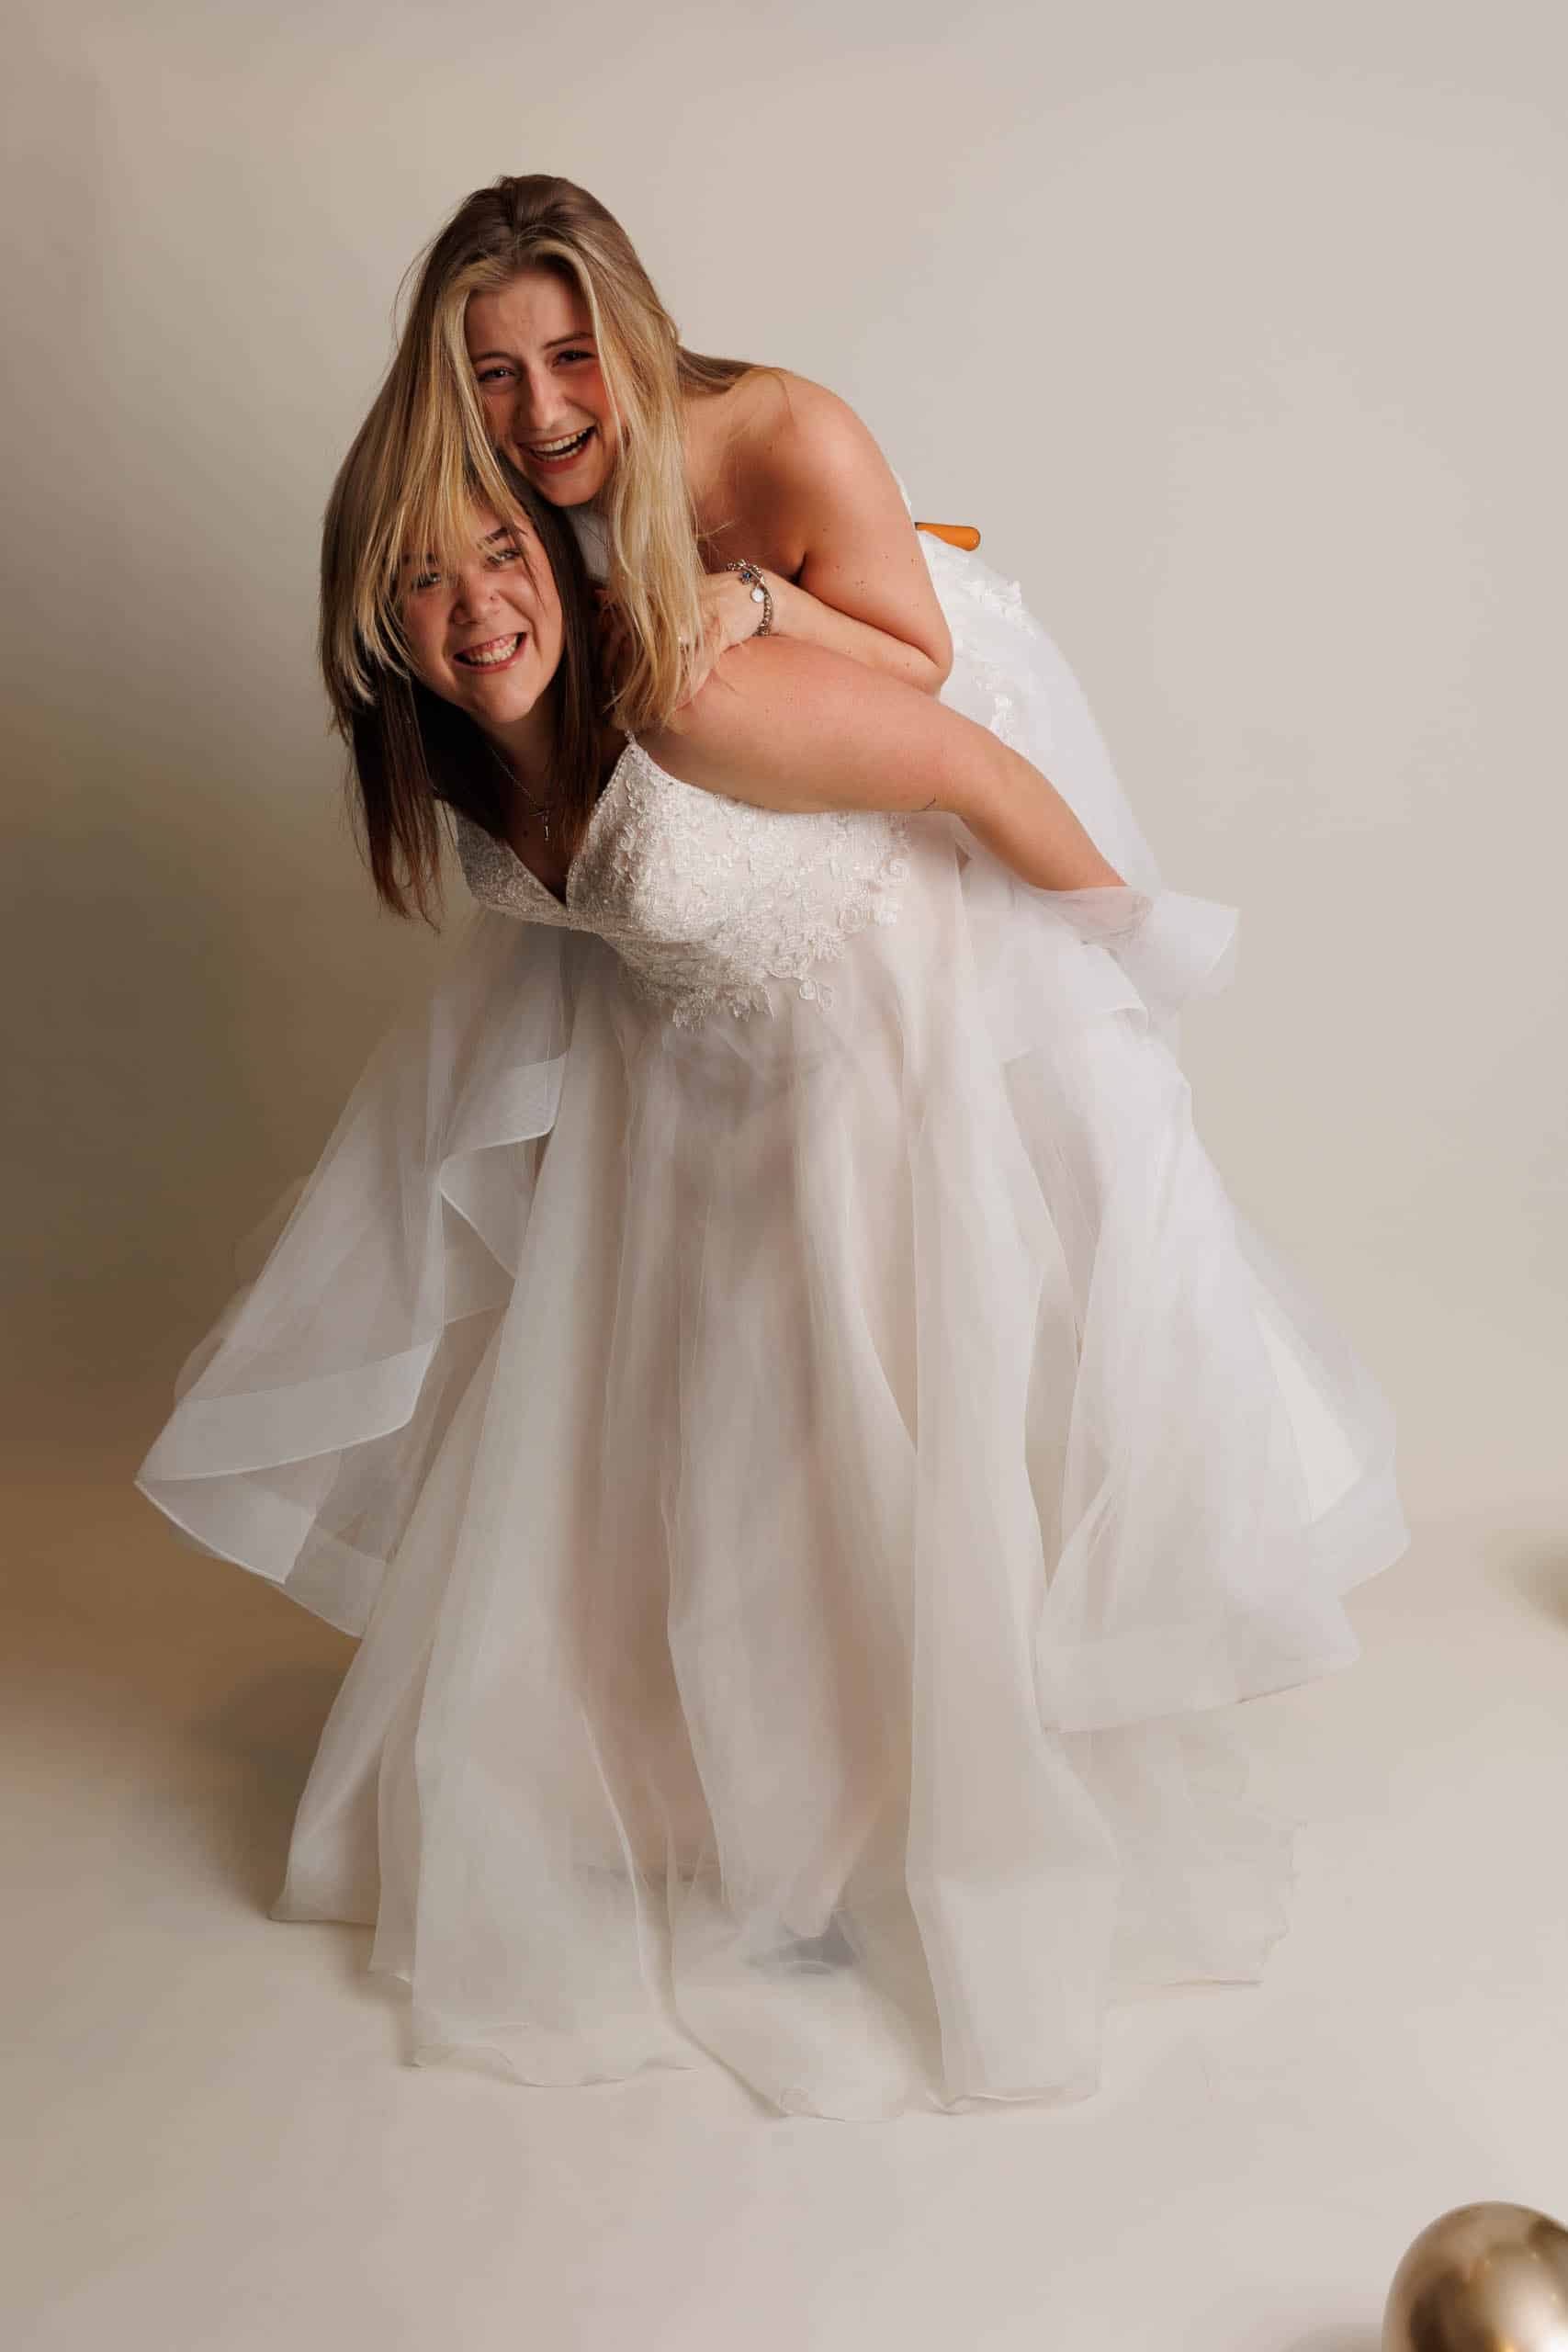 Description: Two women in wedding dresses for a photo as a joke.